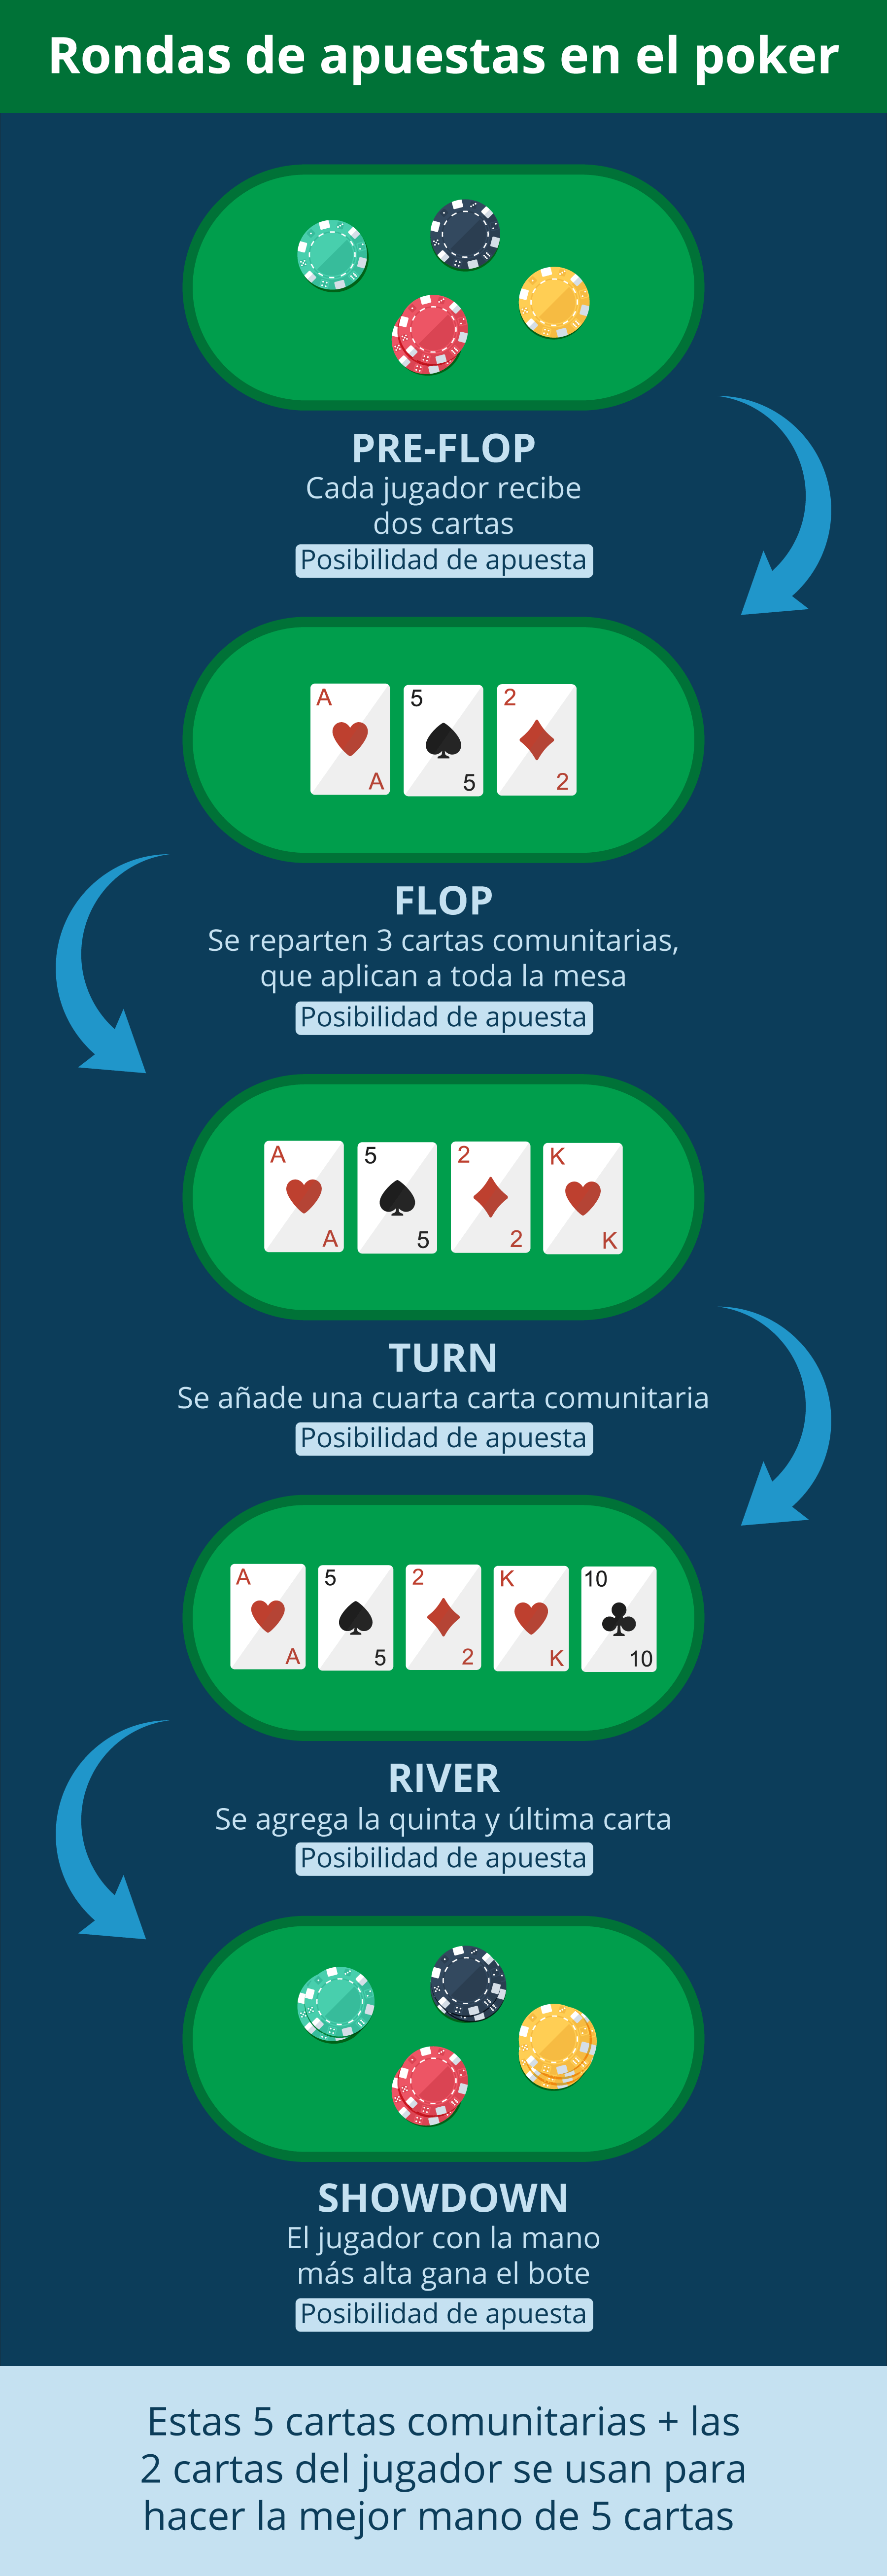 Tabla de ayuda para rondas de apuestas en el póker